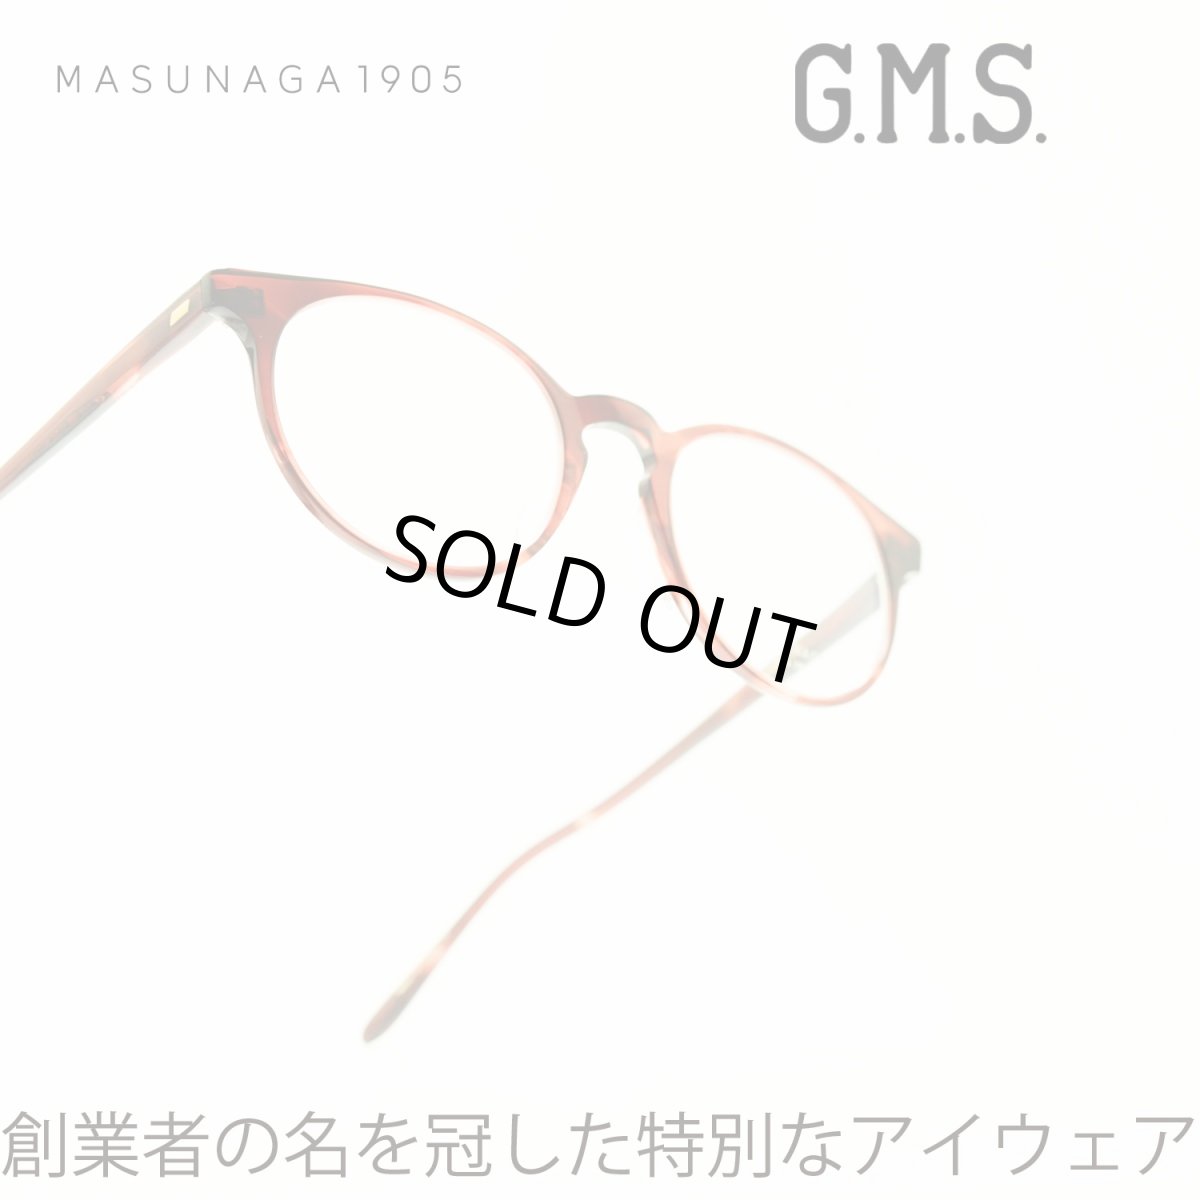 画像1: 増永眼鏡 MASUNAGA GMS-15 col-37 RED (1)